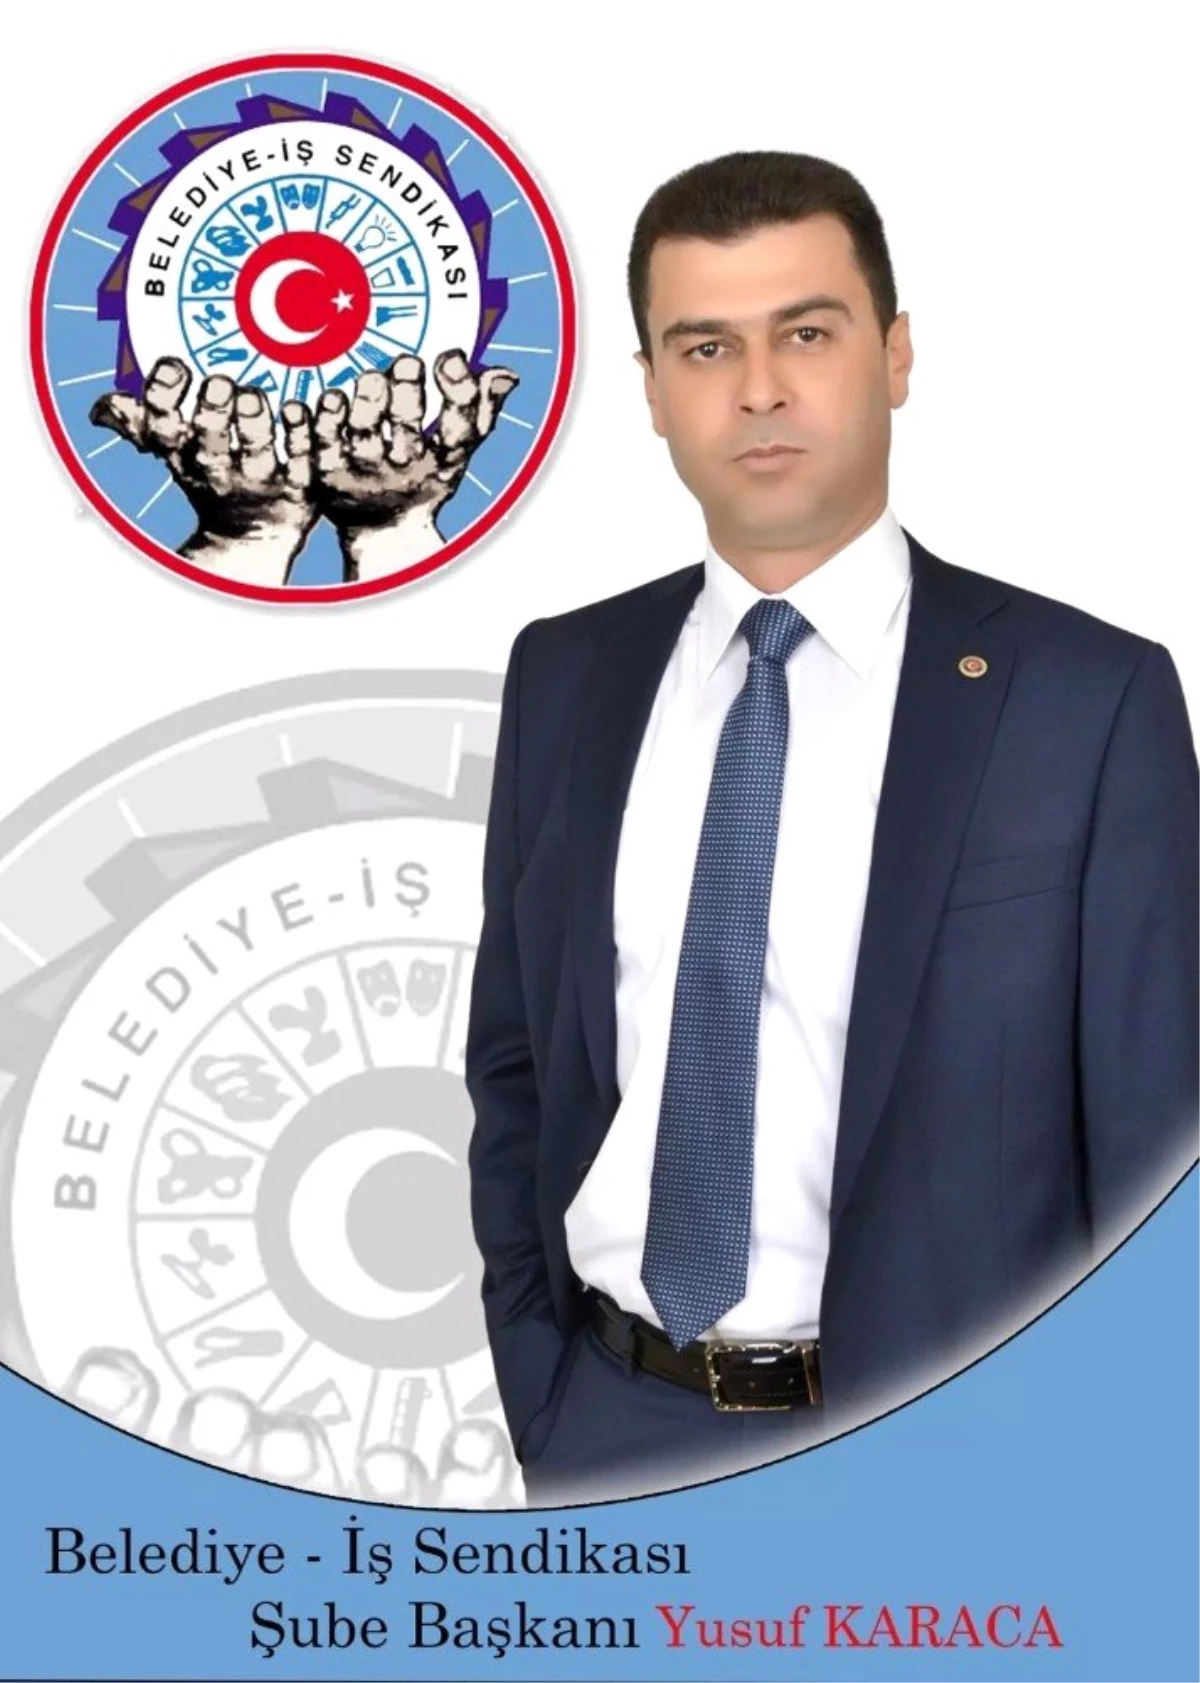 Belediye İş Sendikası Niğde Şube Başkanı Yusuf Karaca, "Emek en yüce değerdir, yaşasın 1 Mayıs"